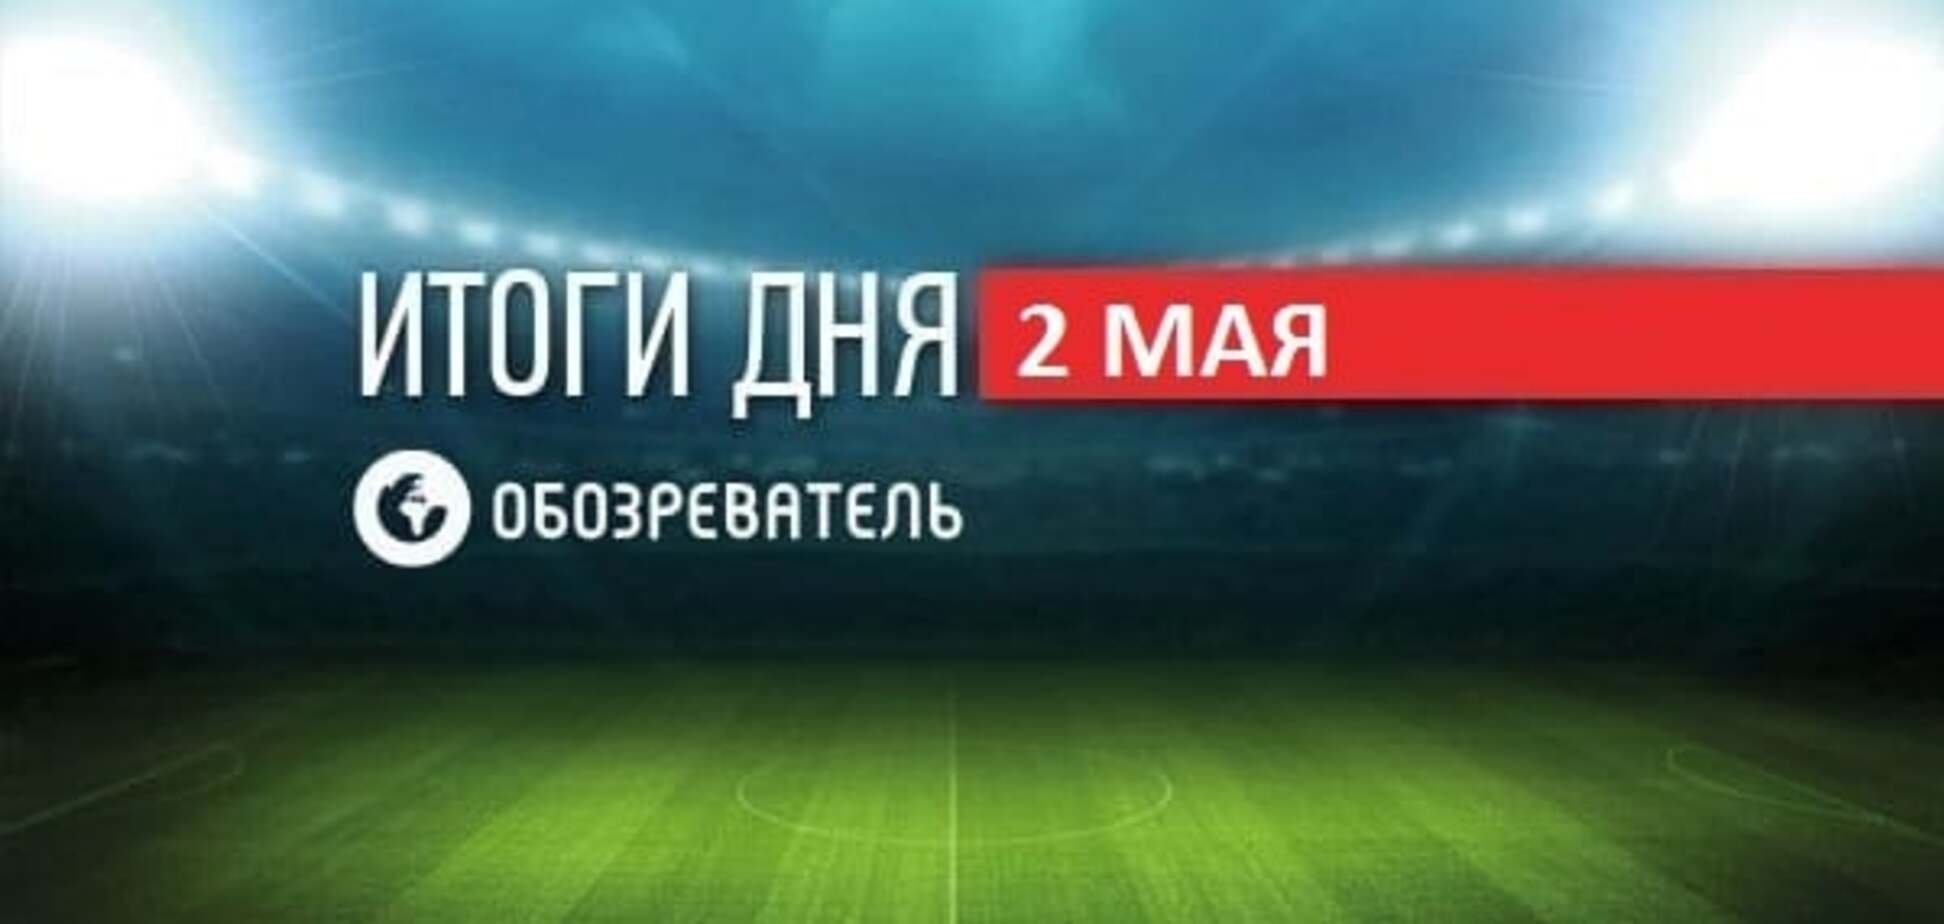 Відео бійки під час матчу 'Шахтар' - 'Динамо'. Спортивні підсумки 2 травня